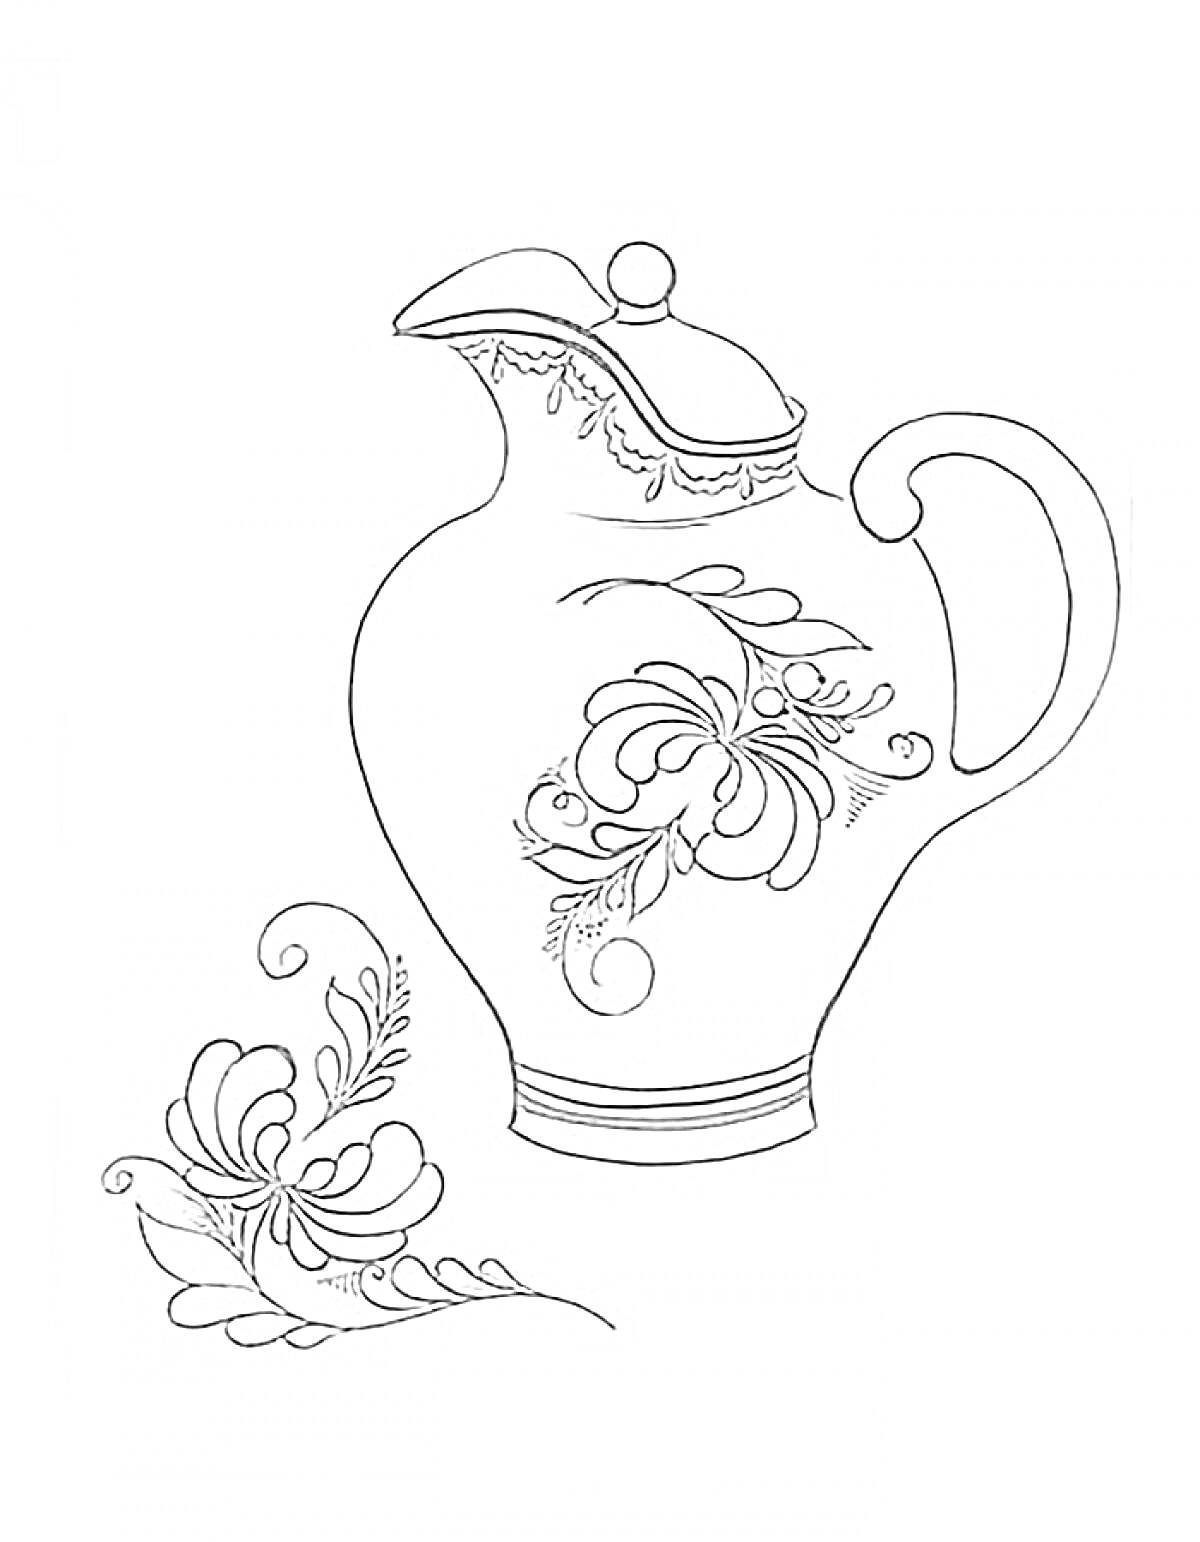 Раскраска Кувшин в стиле Гжель с цветочным орнаментом и дополнительным цветочным элементом